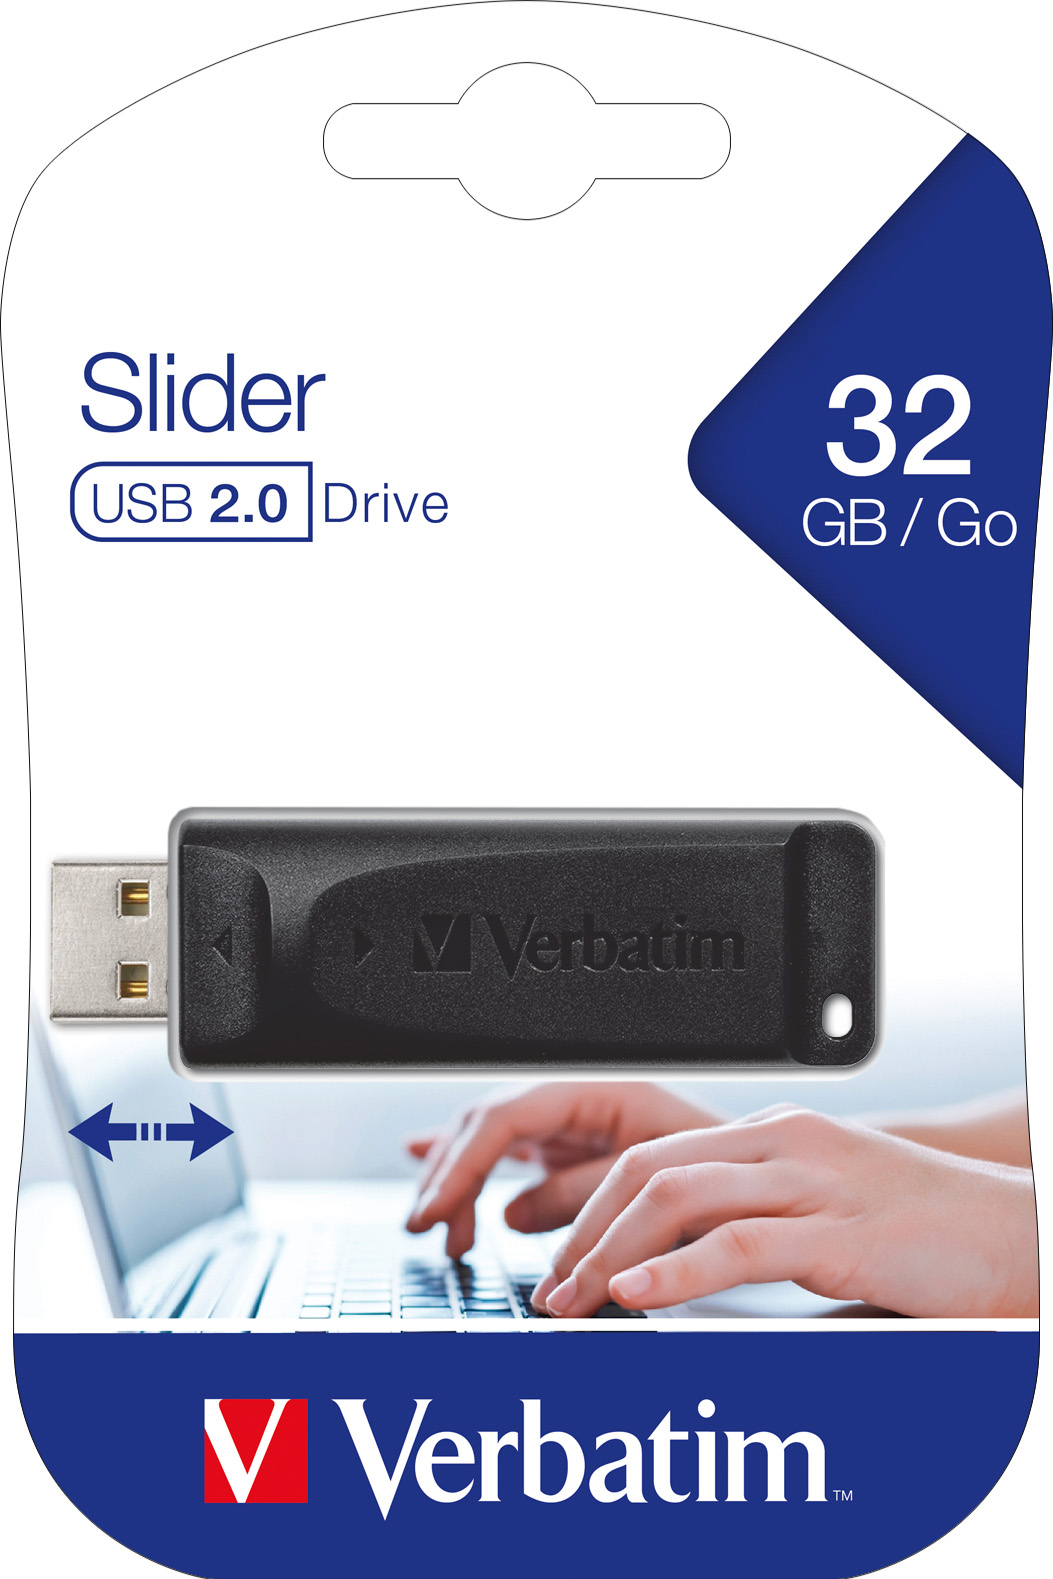 Verbatim USB 2.0 Stick 32GB, Slider (R) 10MB/s, (W) 4MB/s, Retail-Blister